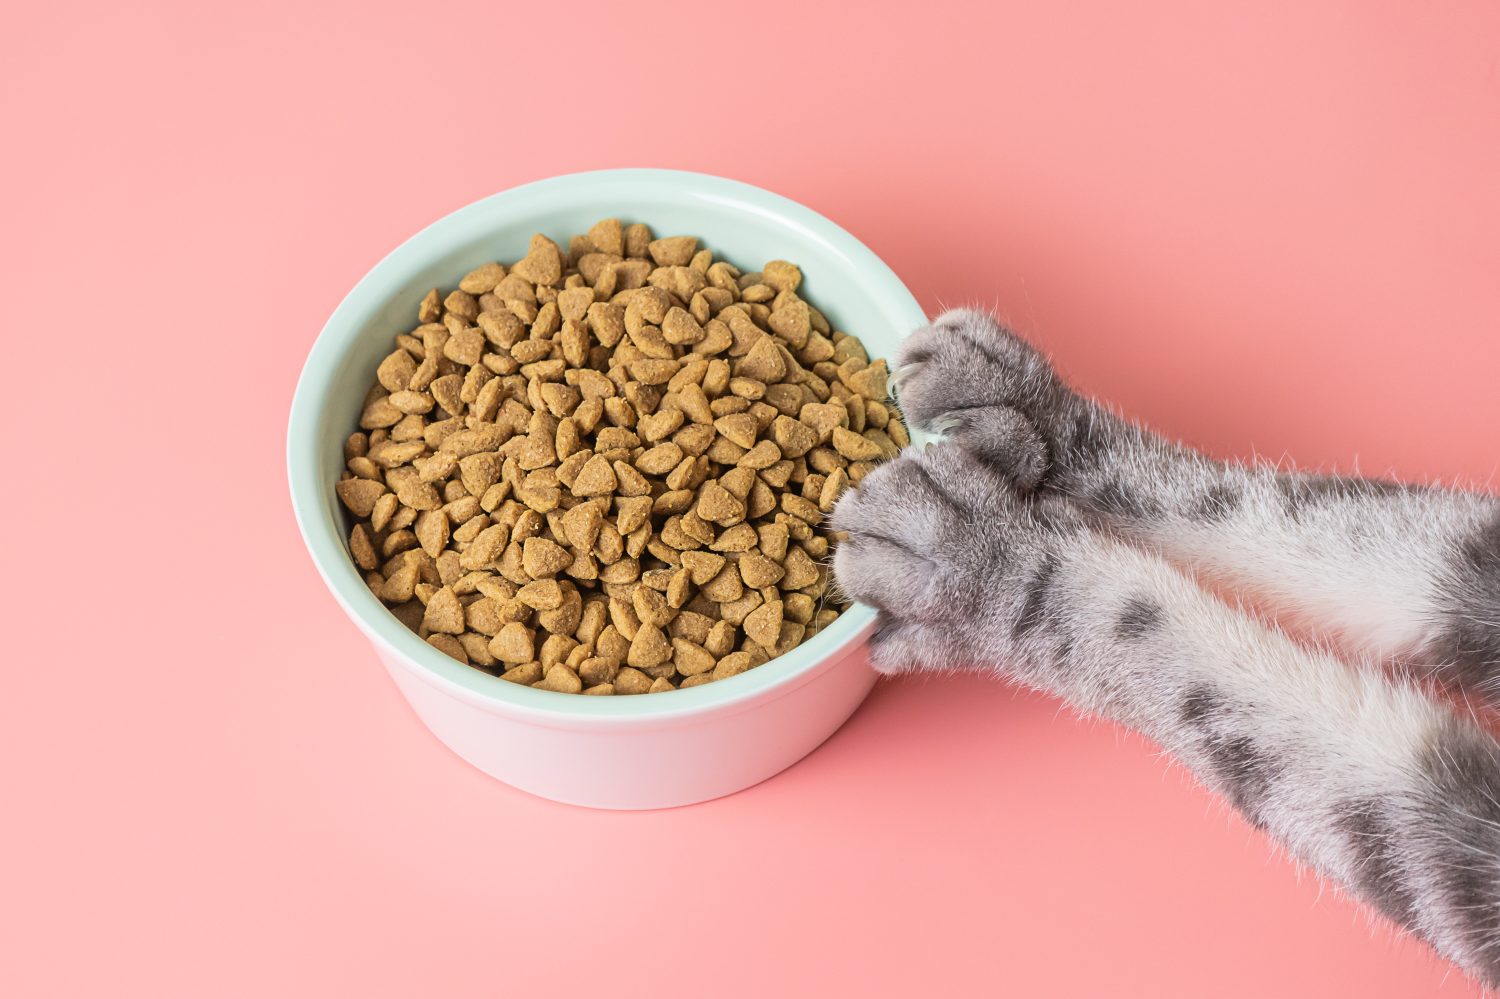 Cibo secco per gatti in una ciotola e zampe su sfondo rosa.  Il concetto di dieta per animali domestici, la scelta del cibo per gatti.  Copia spazio, minimalismo.